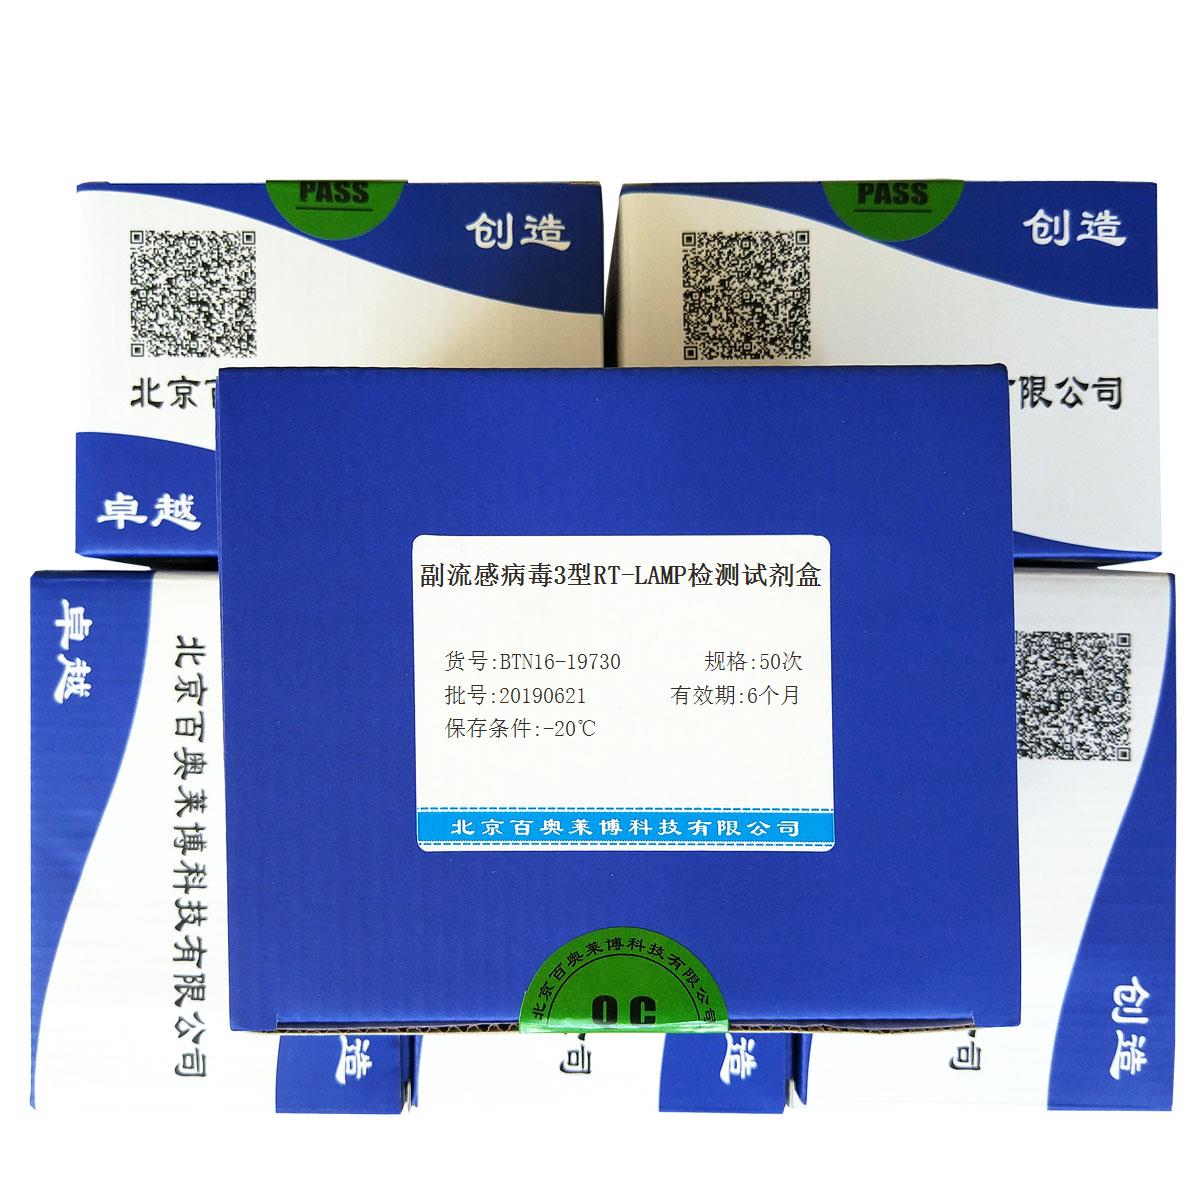 副流感病毒3型RT-LAMP检测试剂盒北京厂家